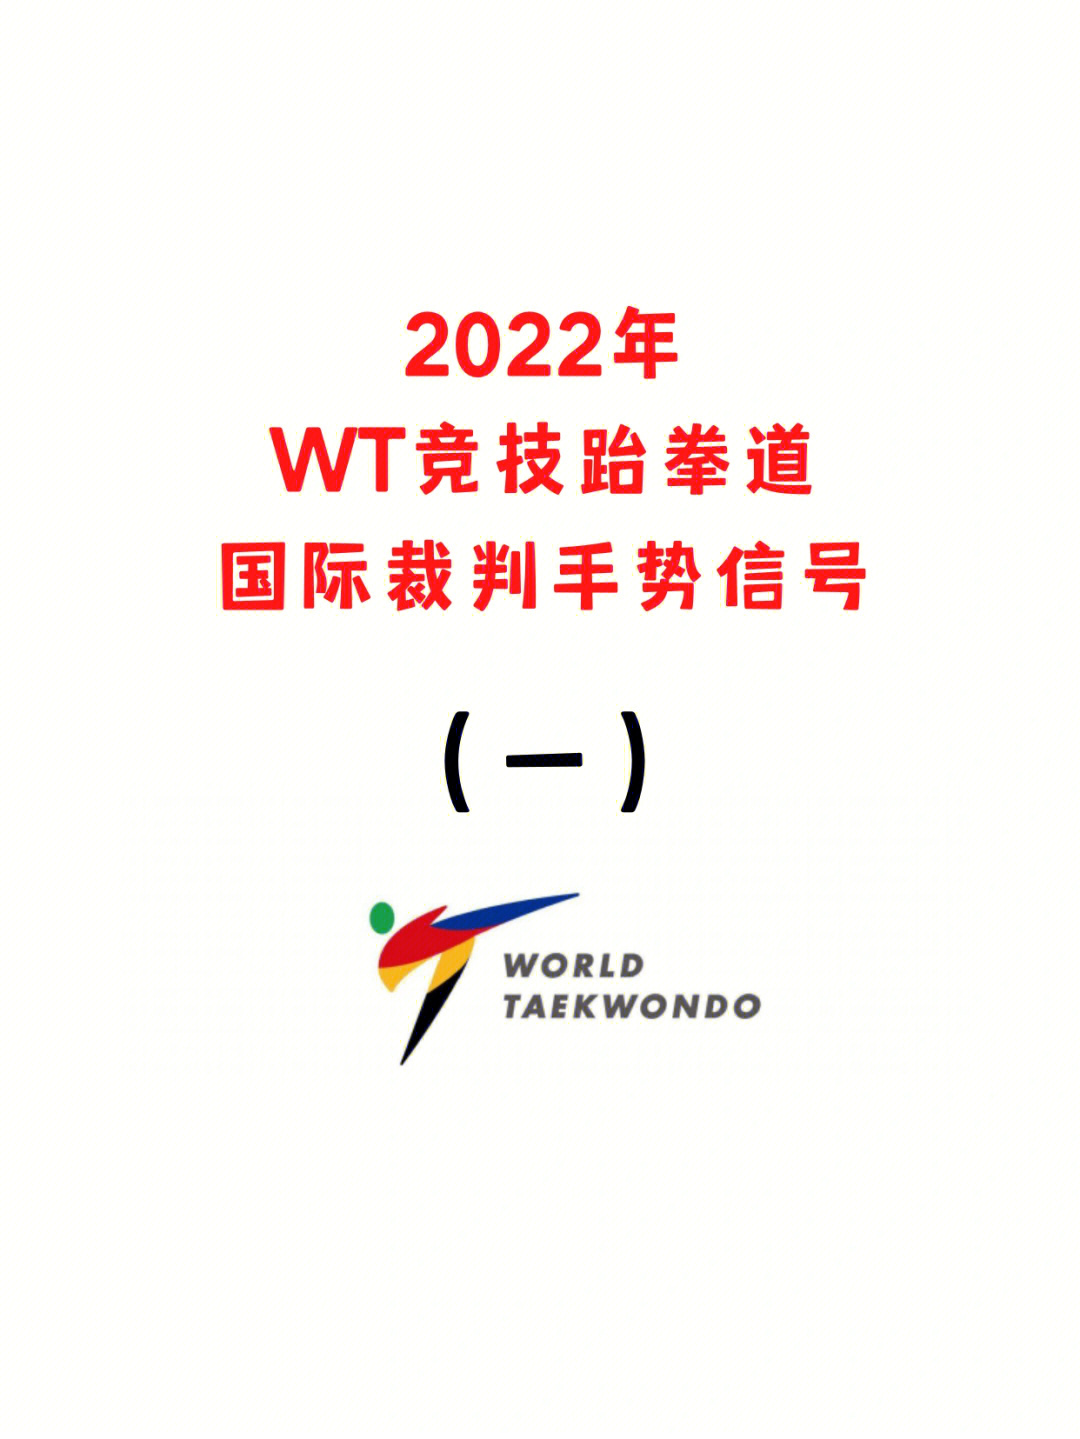 2022年wt竞技跆拳道规则裁判手势信号